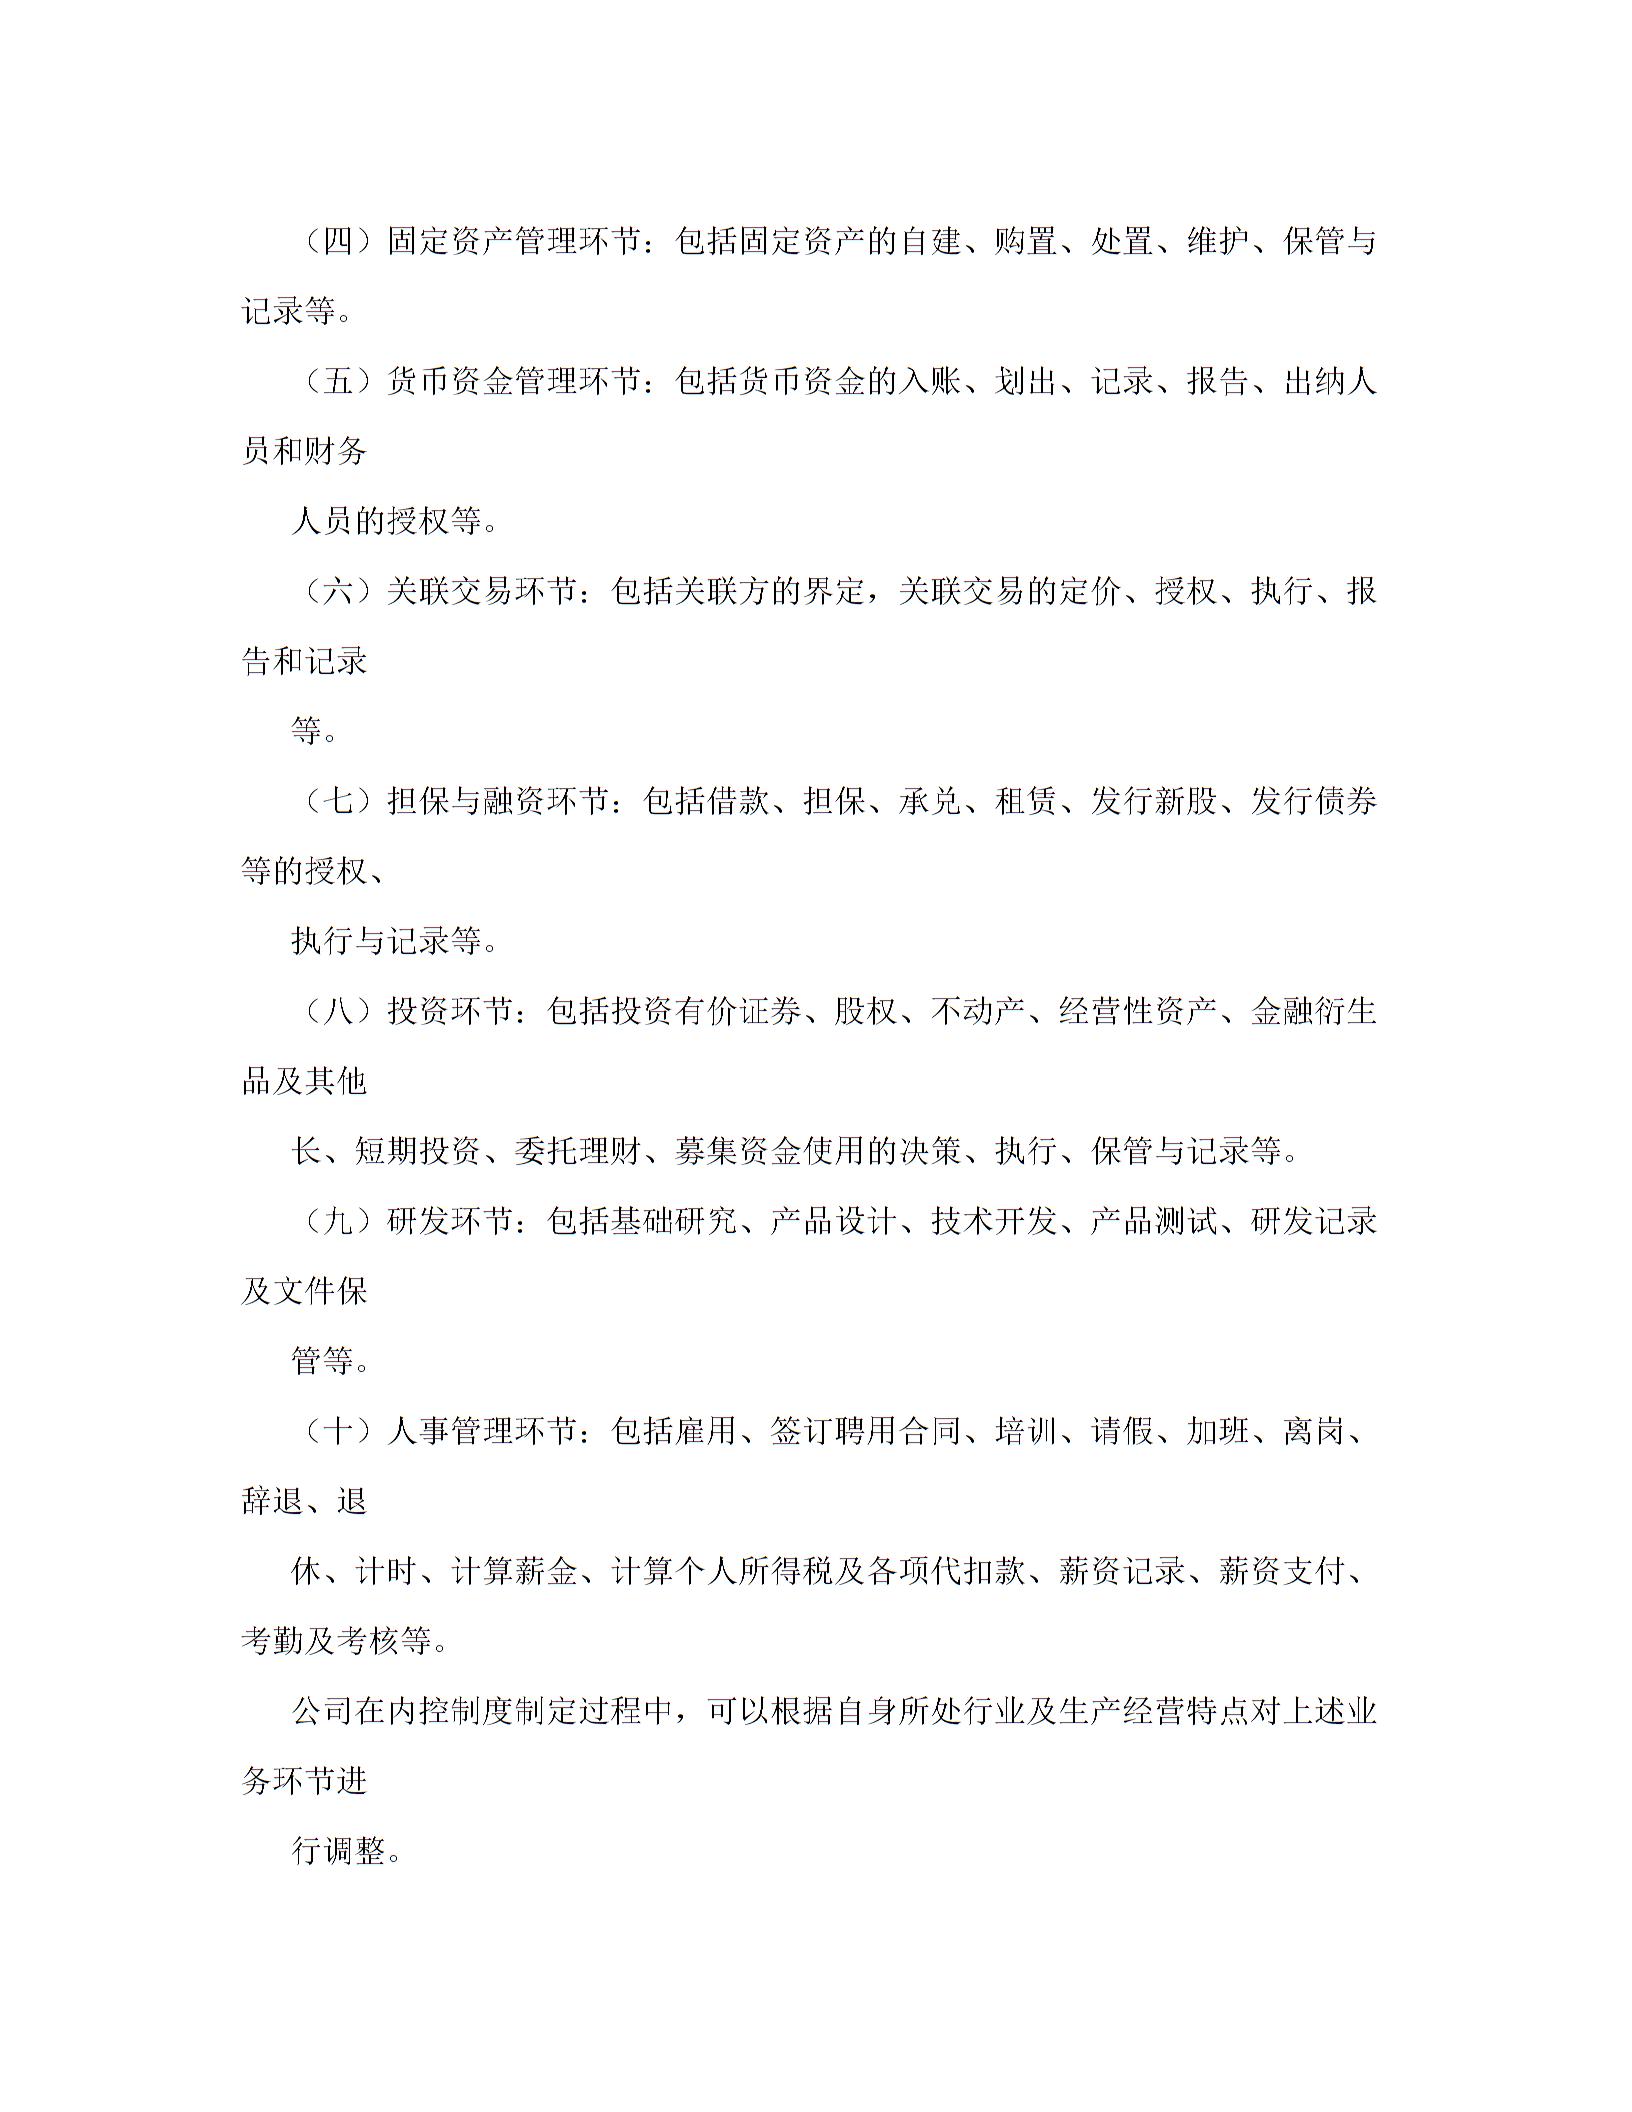 上海证券交易所上市公司内部控制指引图片3